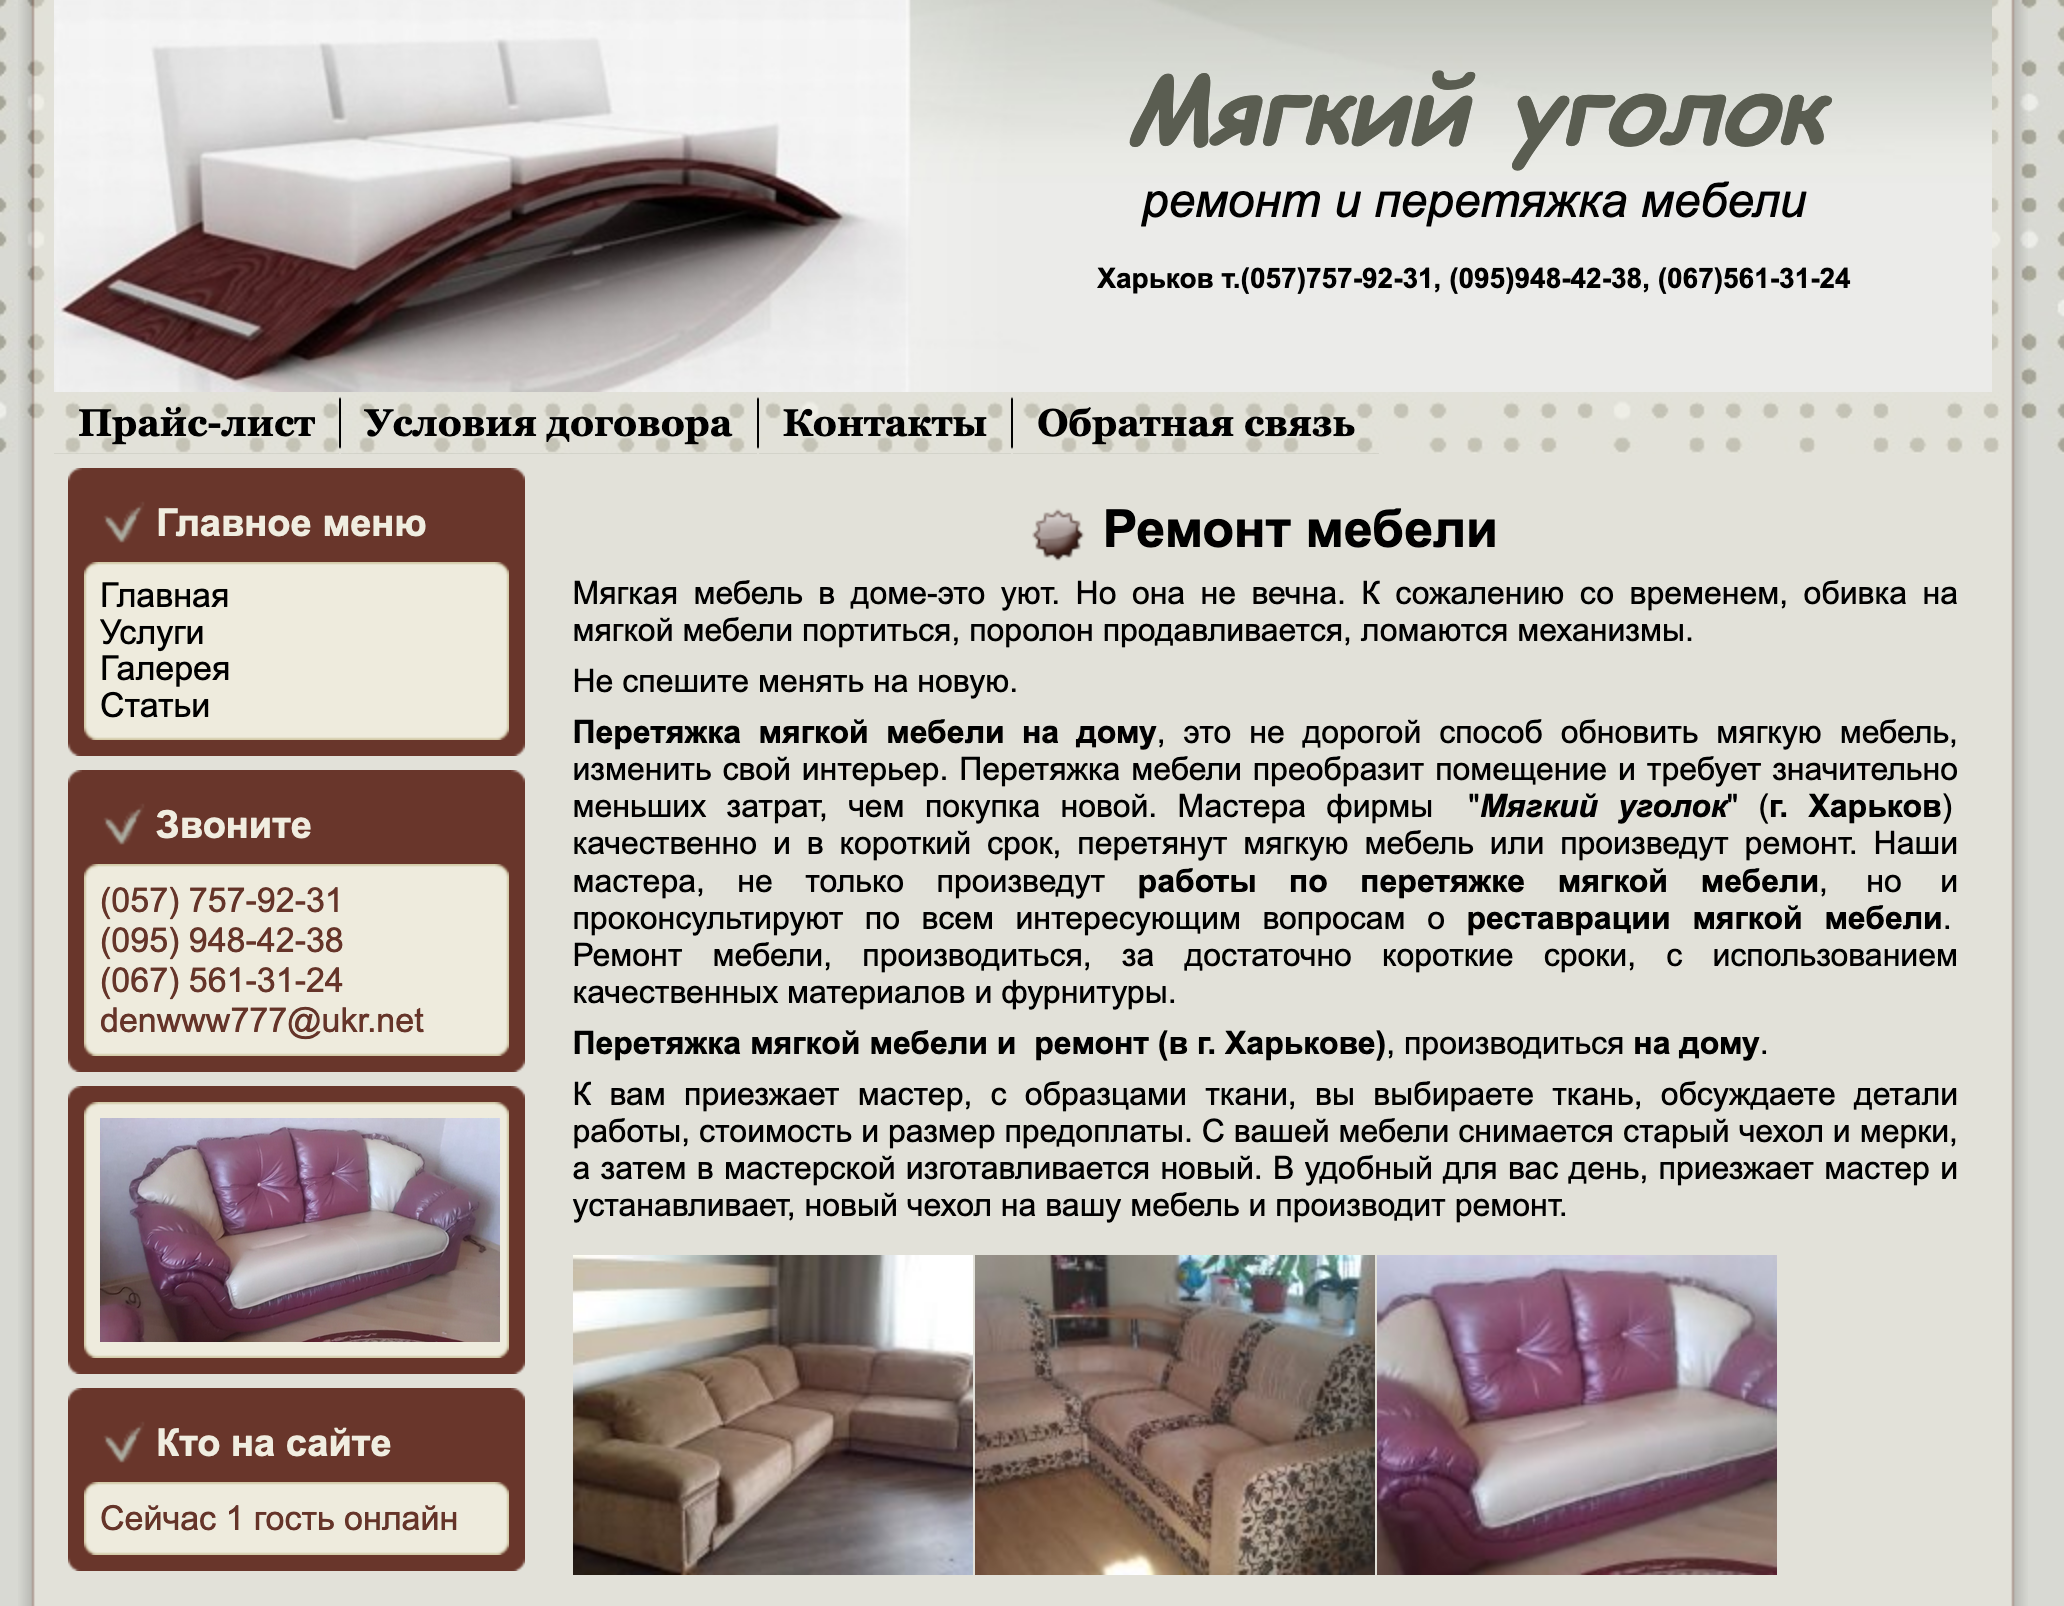 Ремонт и перетяжка мебели - сайт-визитка в Харькове